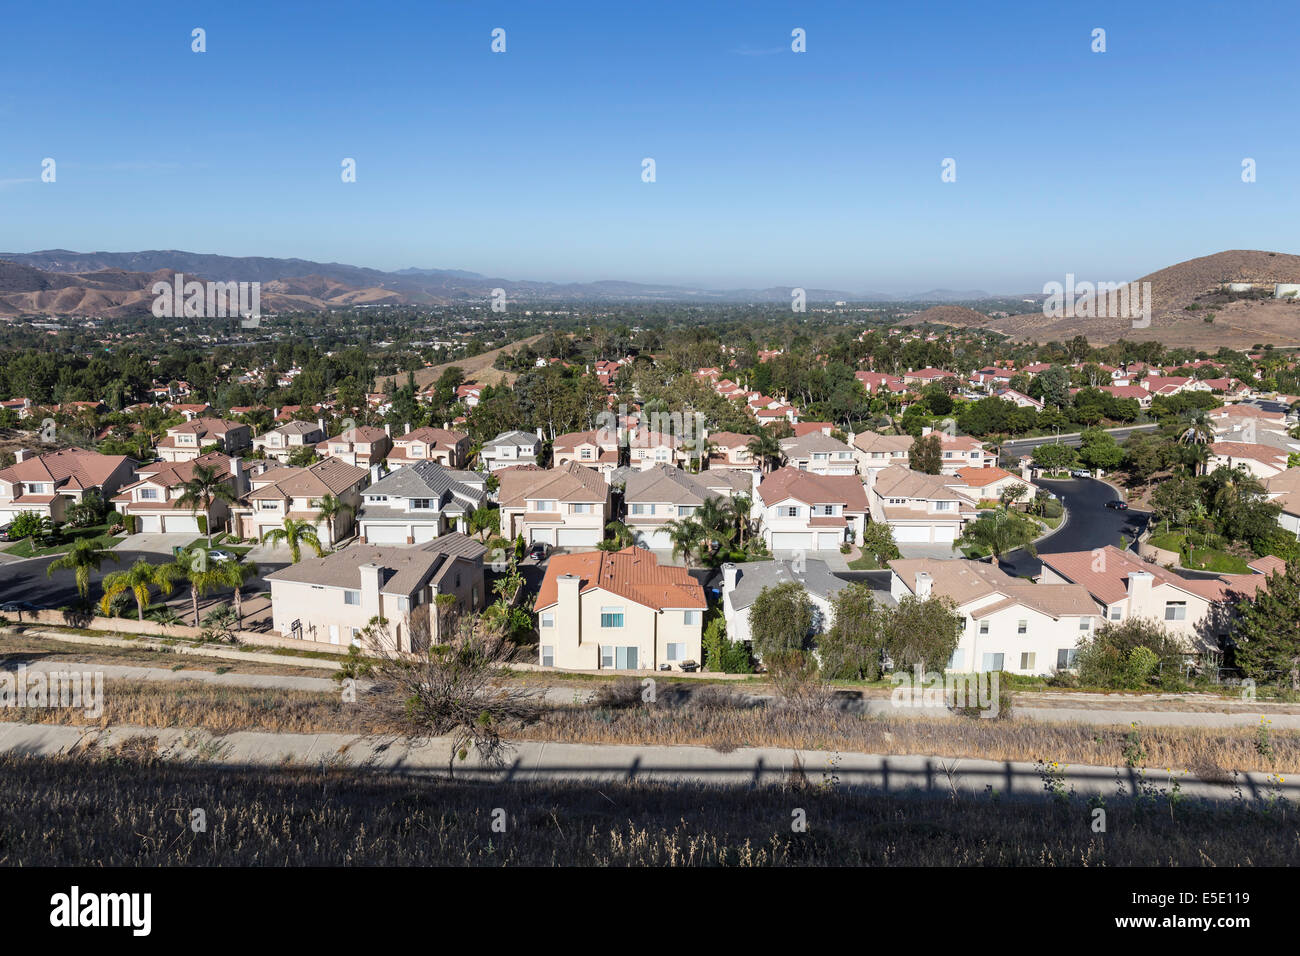 Komfortable Vorort in Ventura County Simi Valley in der Nähe von Los Angeles, Kalifornien. Stockfoto